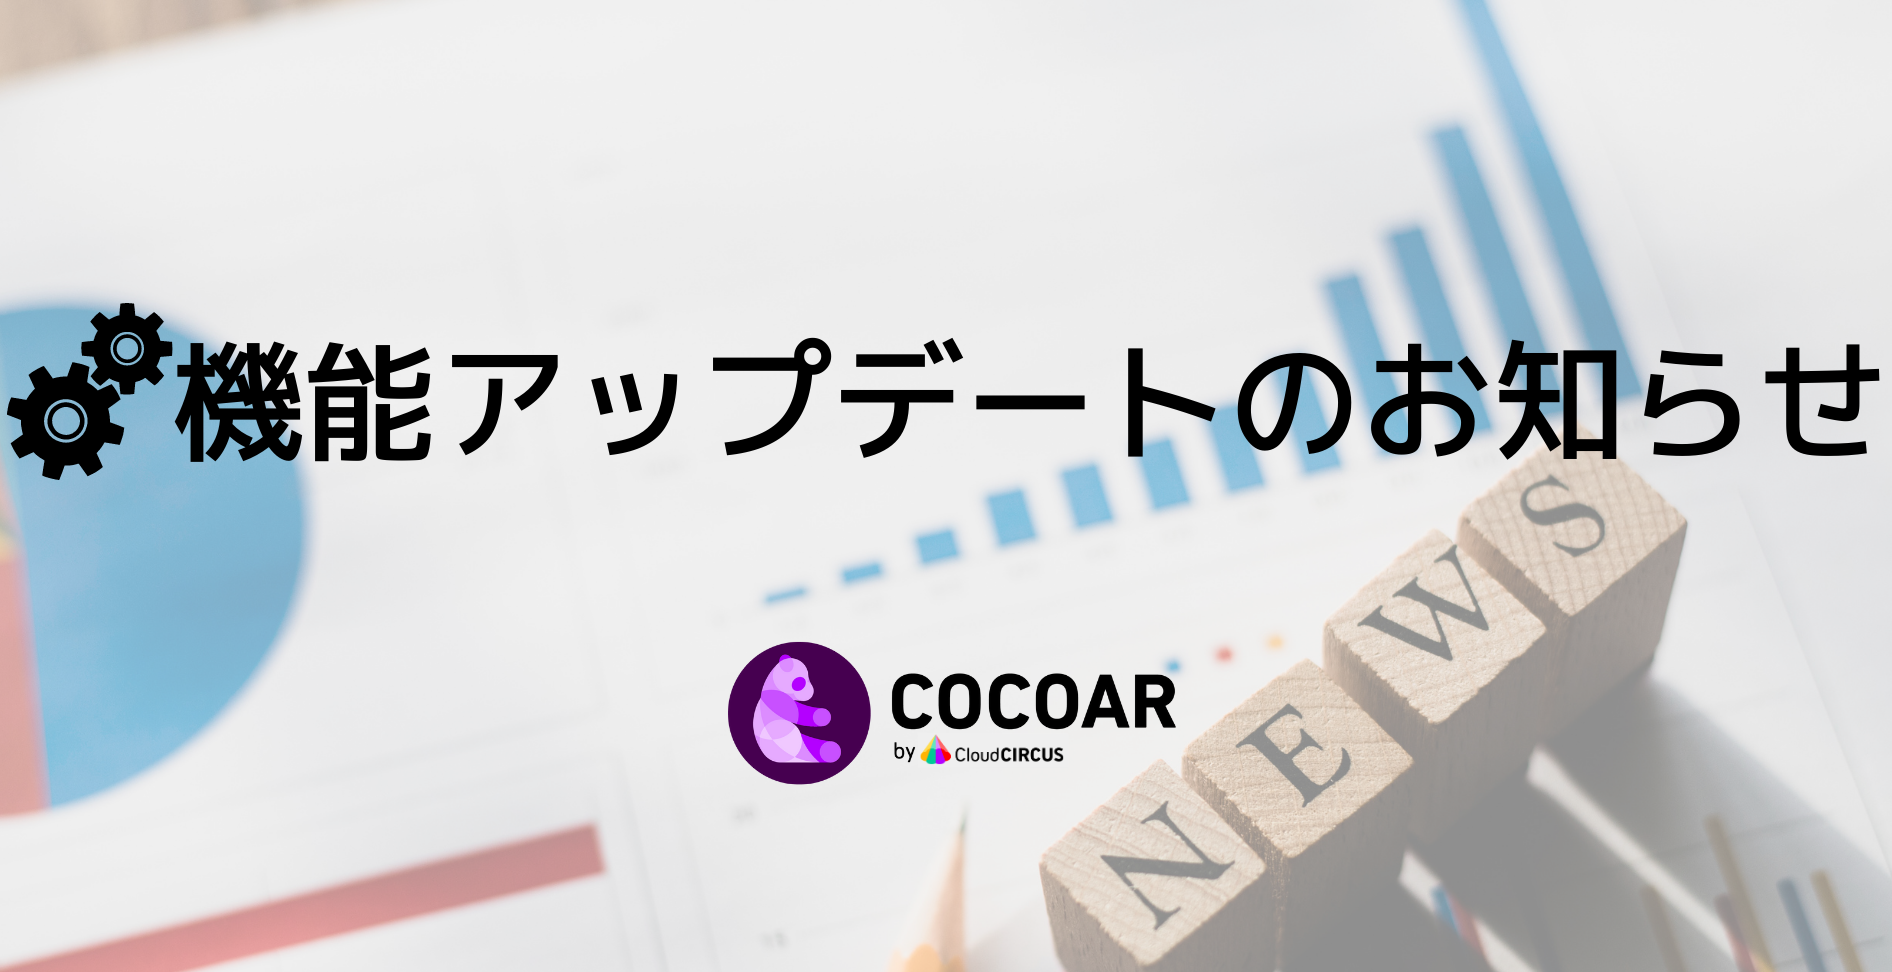 COCOAR14.0.0をリリースいたしました。